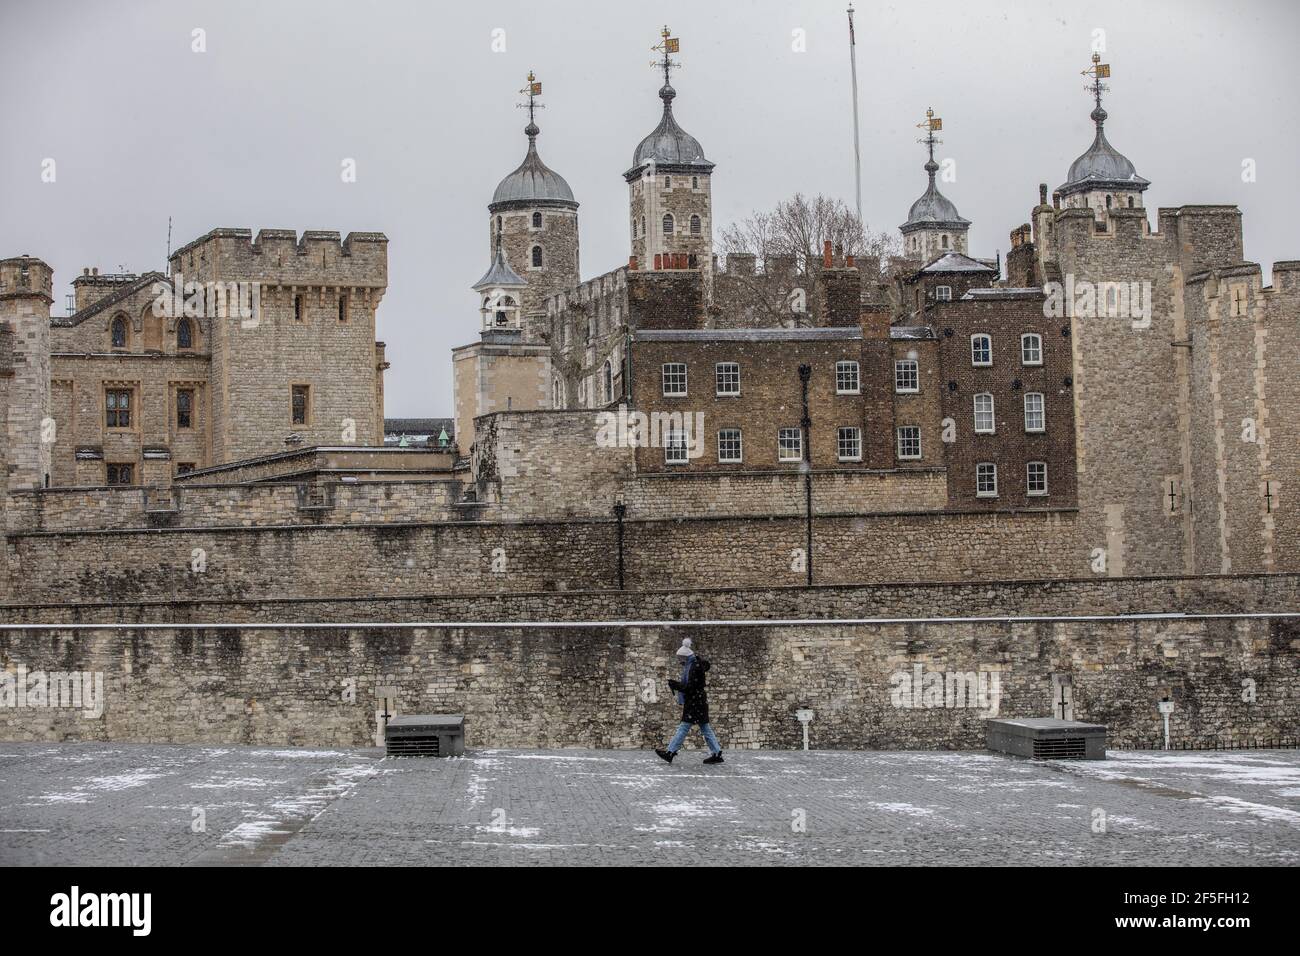 La Tour de Londres a été recouverte de neige alors que les températures glaciales frappent Londres pendant la tempête Darcy, Londres, Angleterre, Royaume-Uni Banque D'Images